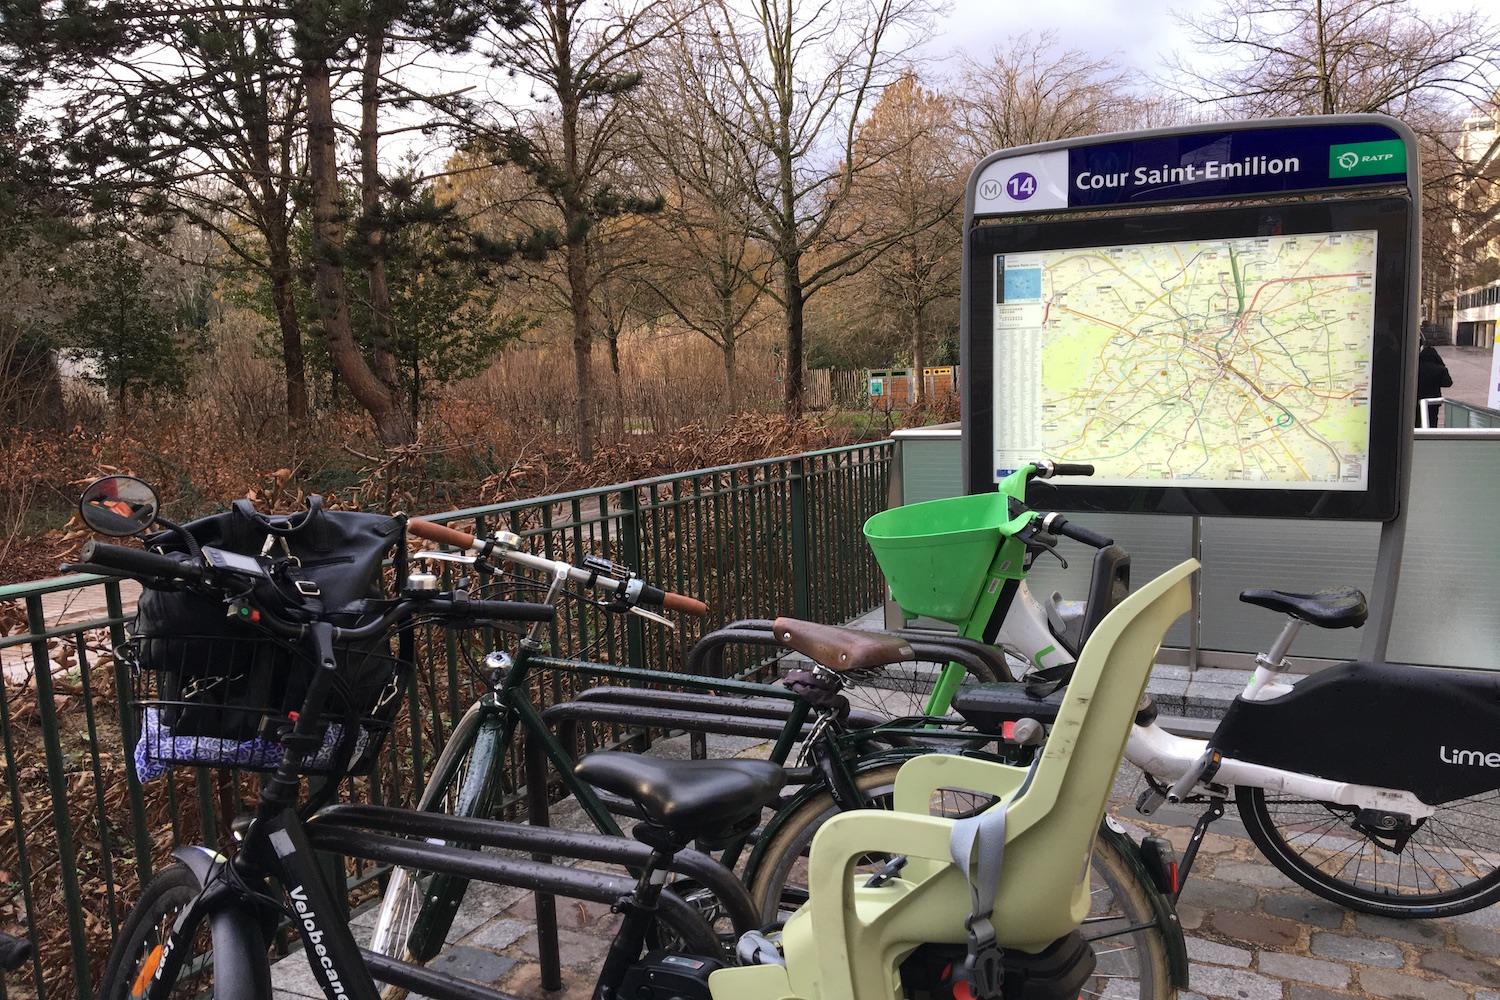 Notre envoyée spéciale attache son vélo devant les grilles du parc de Bercy © Globe Reporters